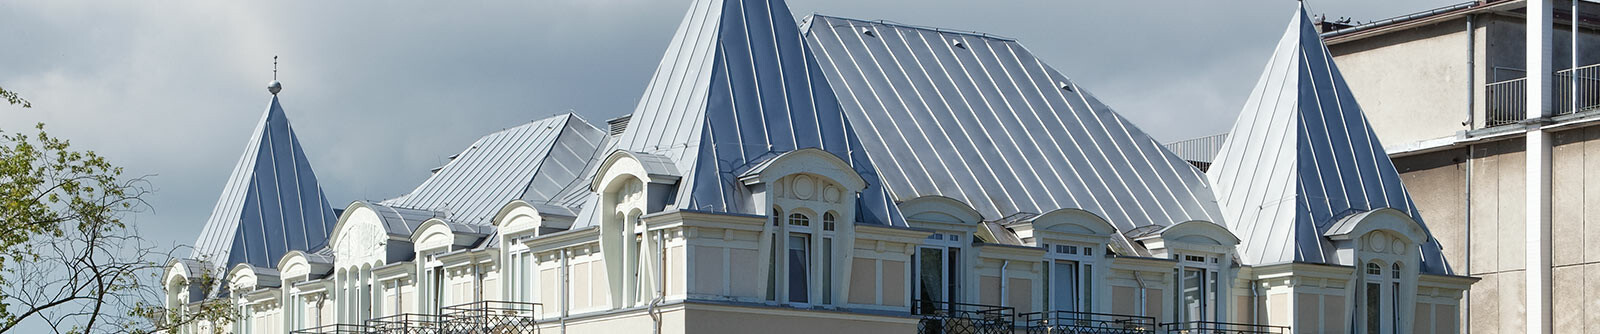 Neu eingedecktes Dach des Hotel Burstzyn mit einem silberfarbenen Bandblech von PREFA